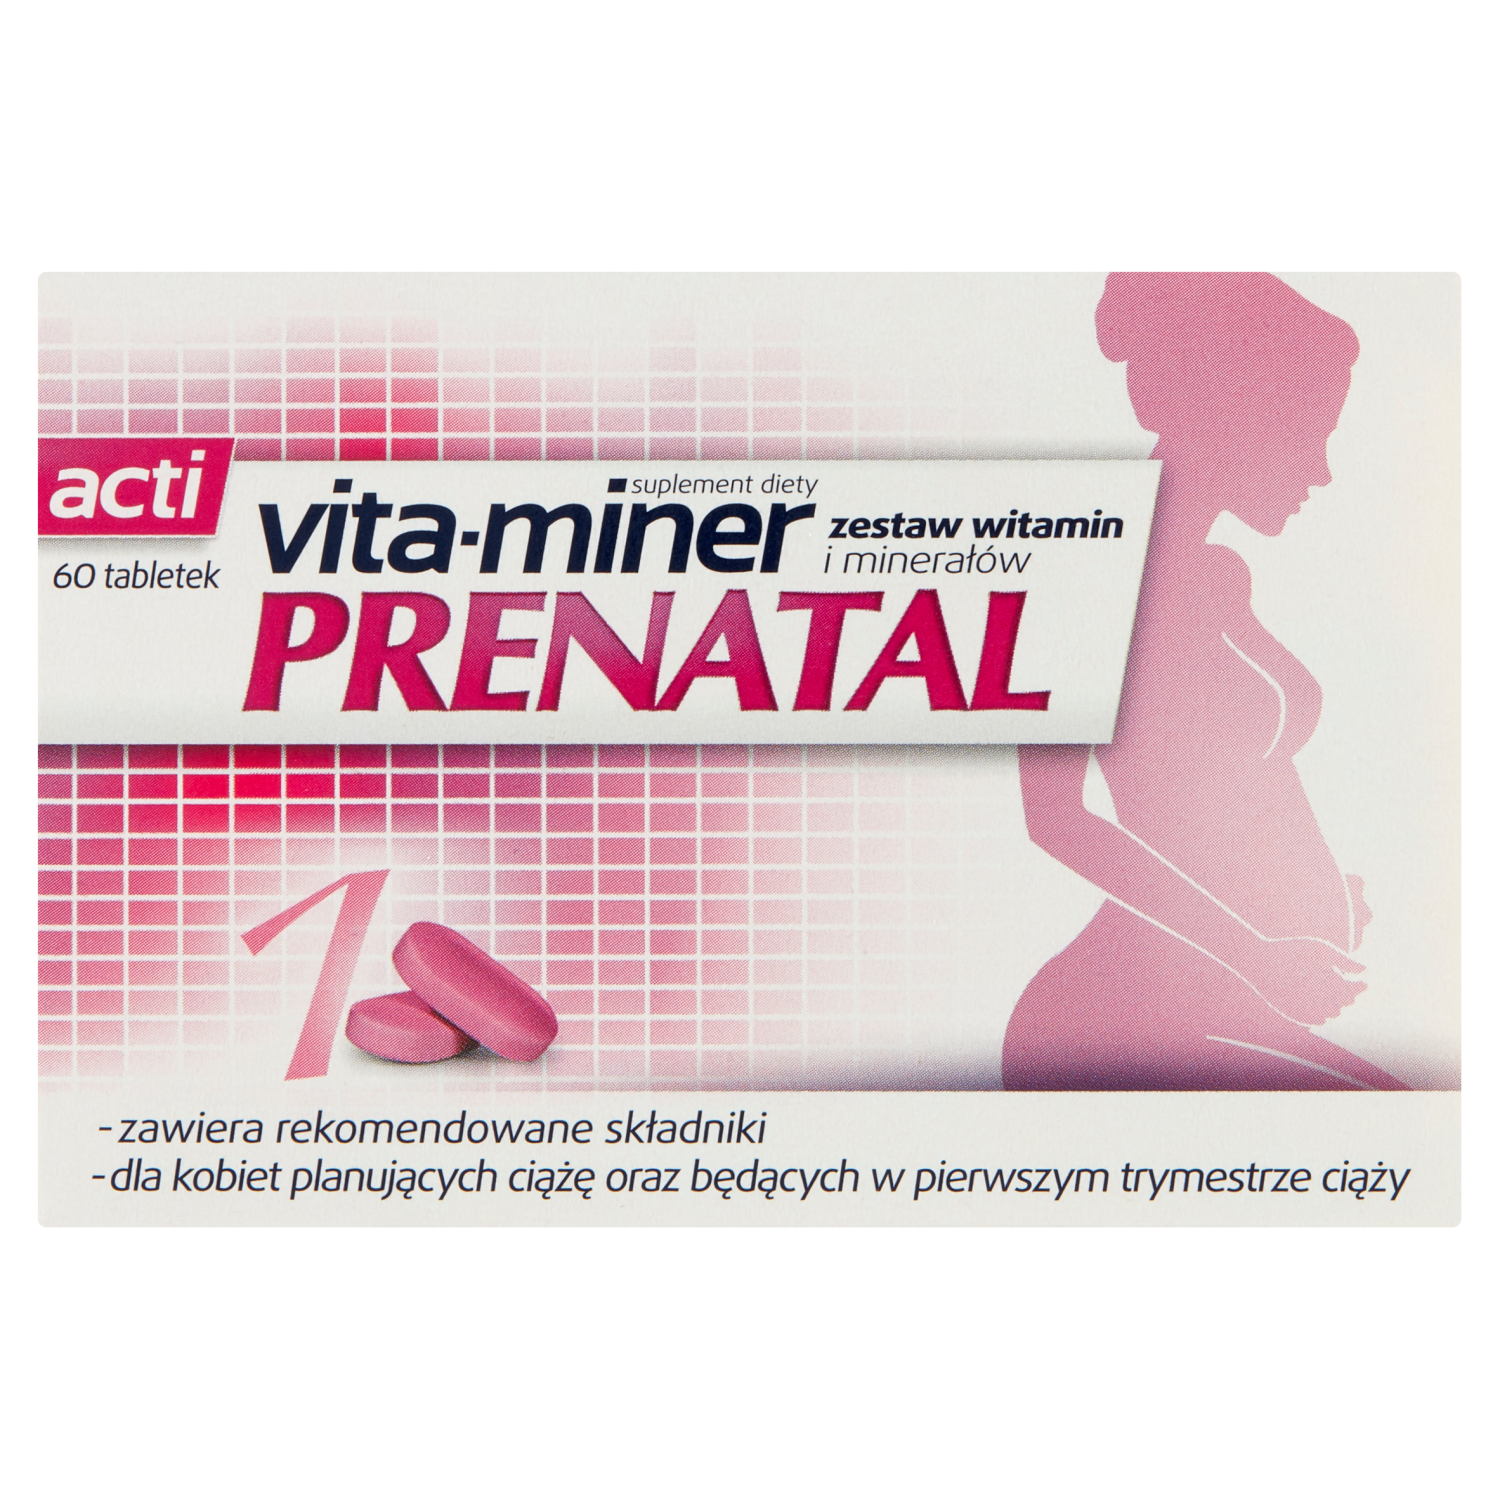 биологически активная добавка solgar prenatal nutrients 60 шт Vita-Miner Prenatal биологически активная добавка, 60 таблеток/1 упаковка